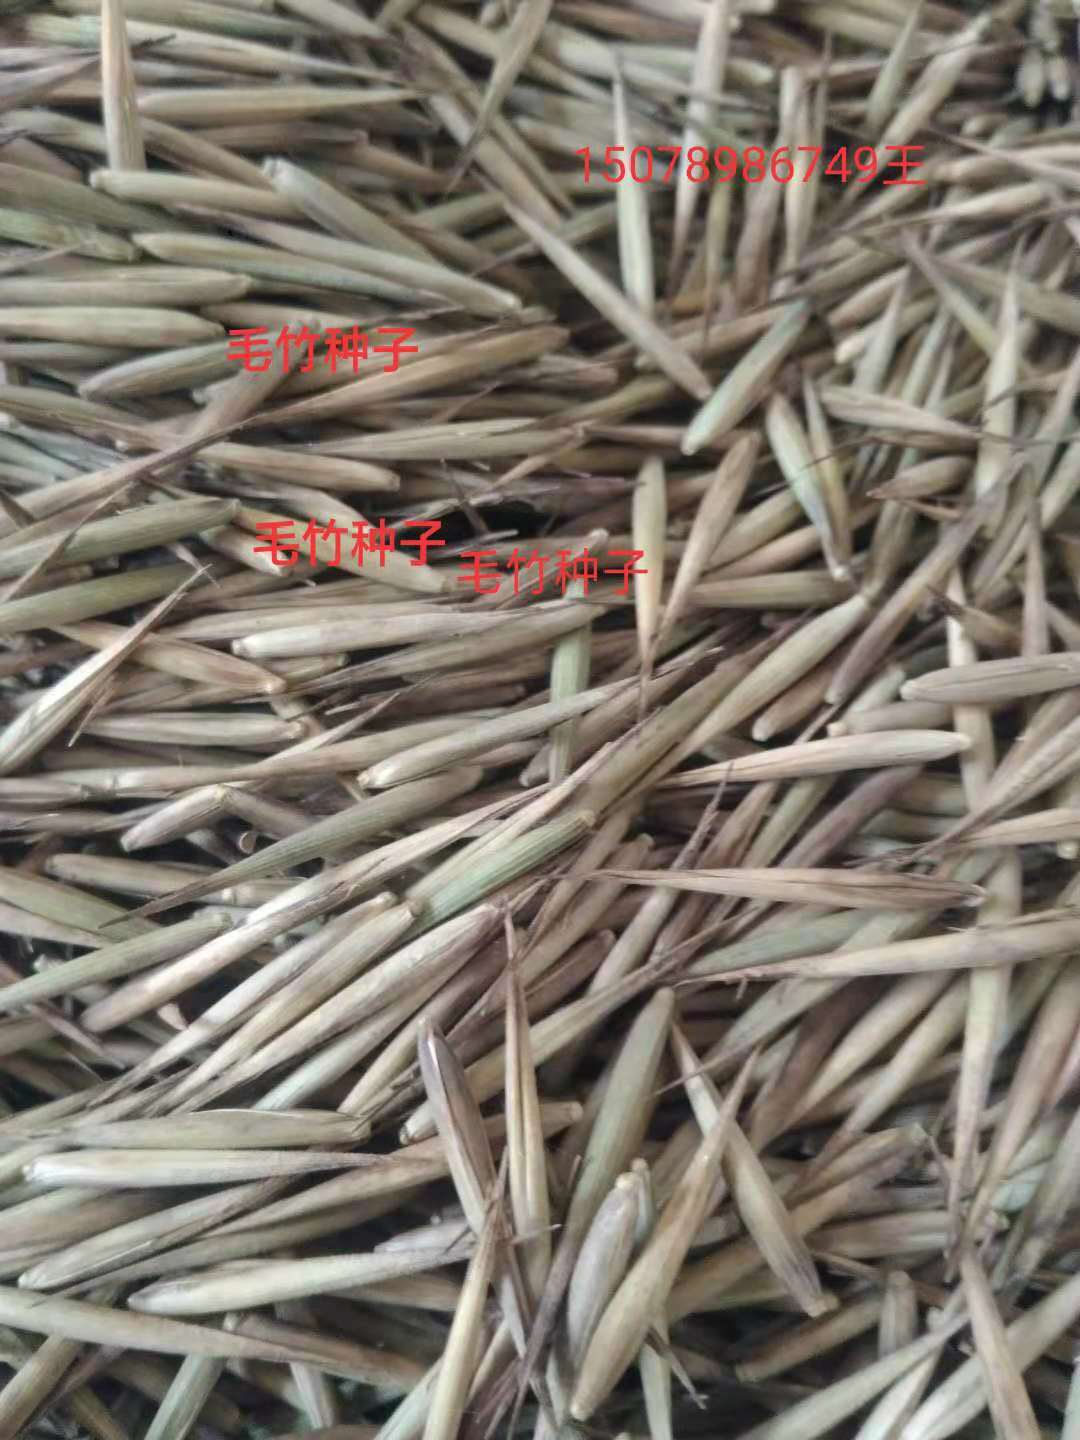 供应广西桂林毛竹种子厂家直销-优质毛竹种子基地采购报价批发价格-毛竹种子种植方法技术质量哪家好图片